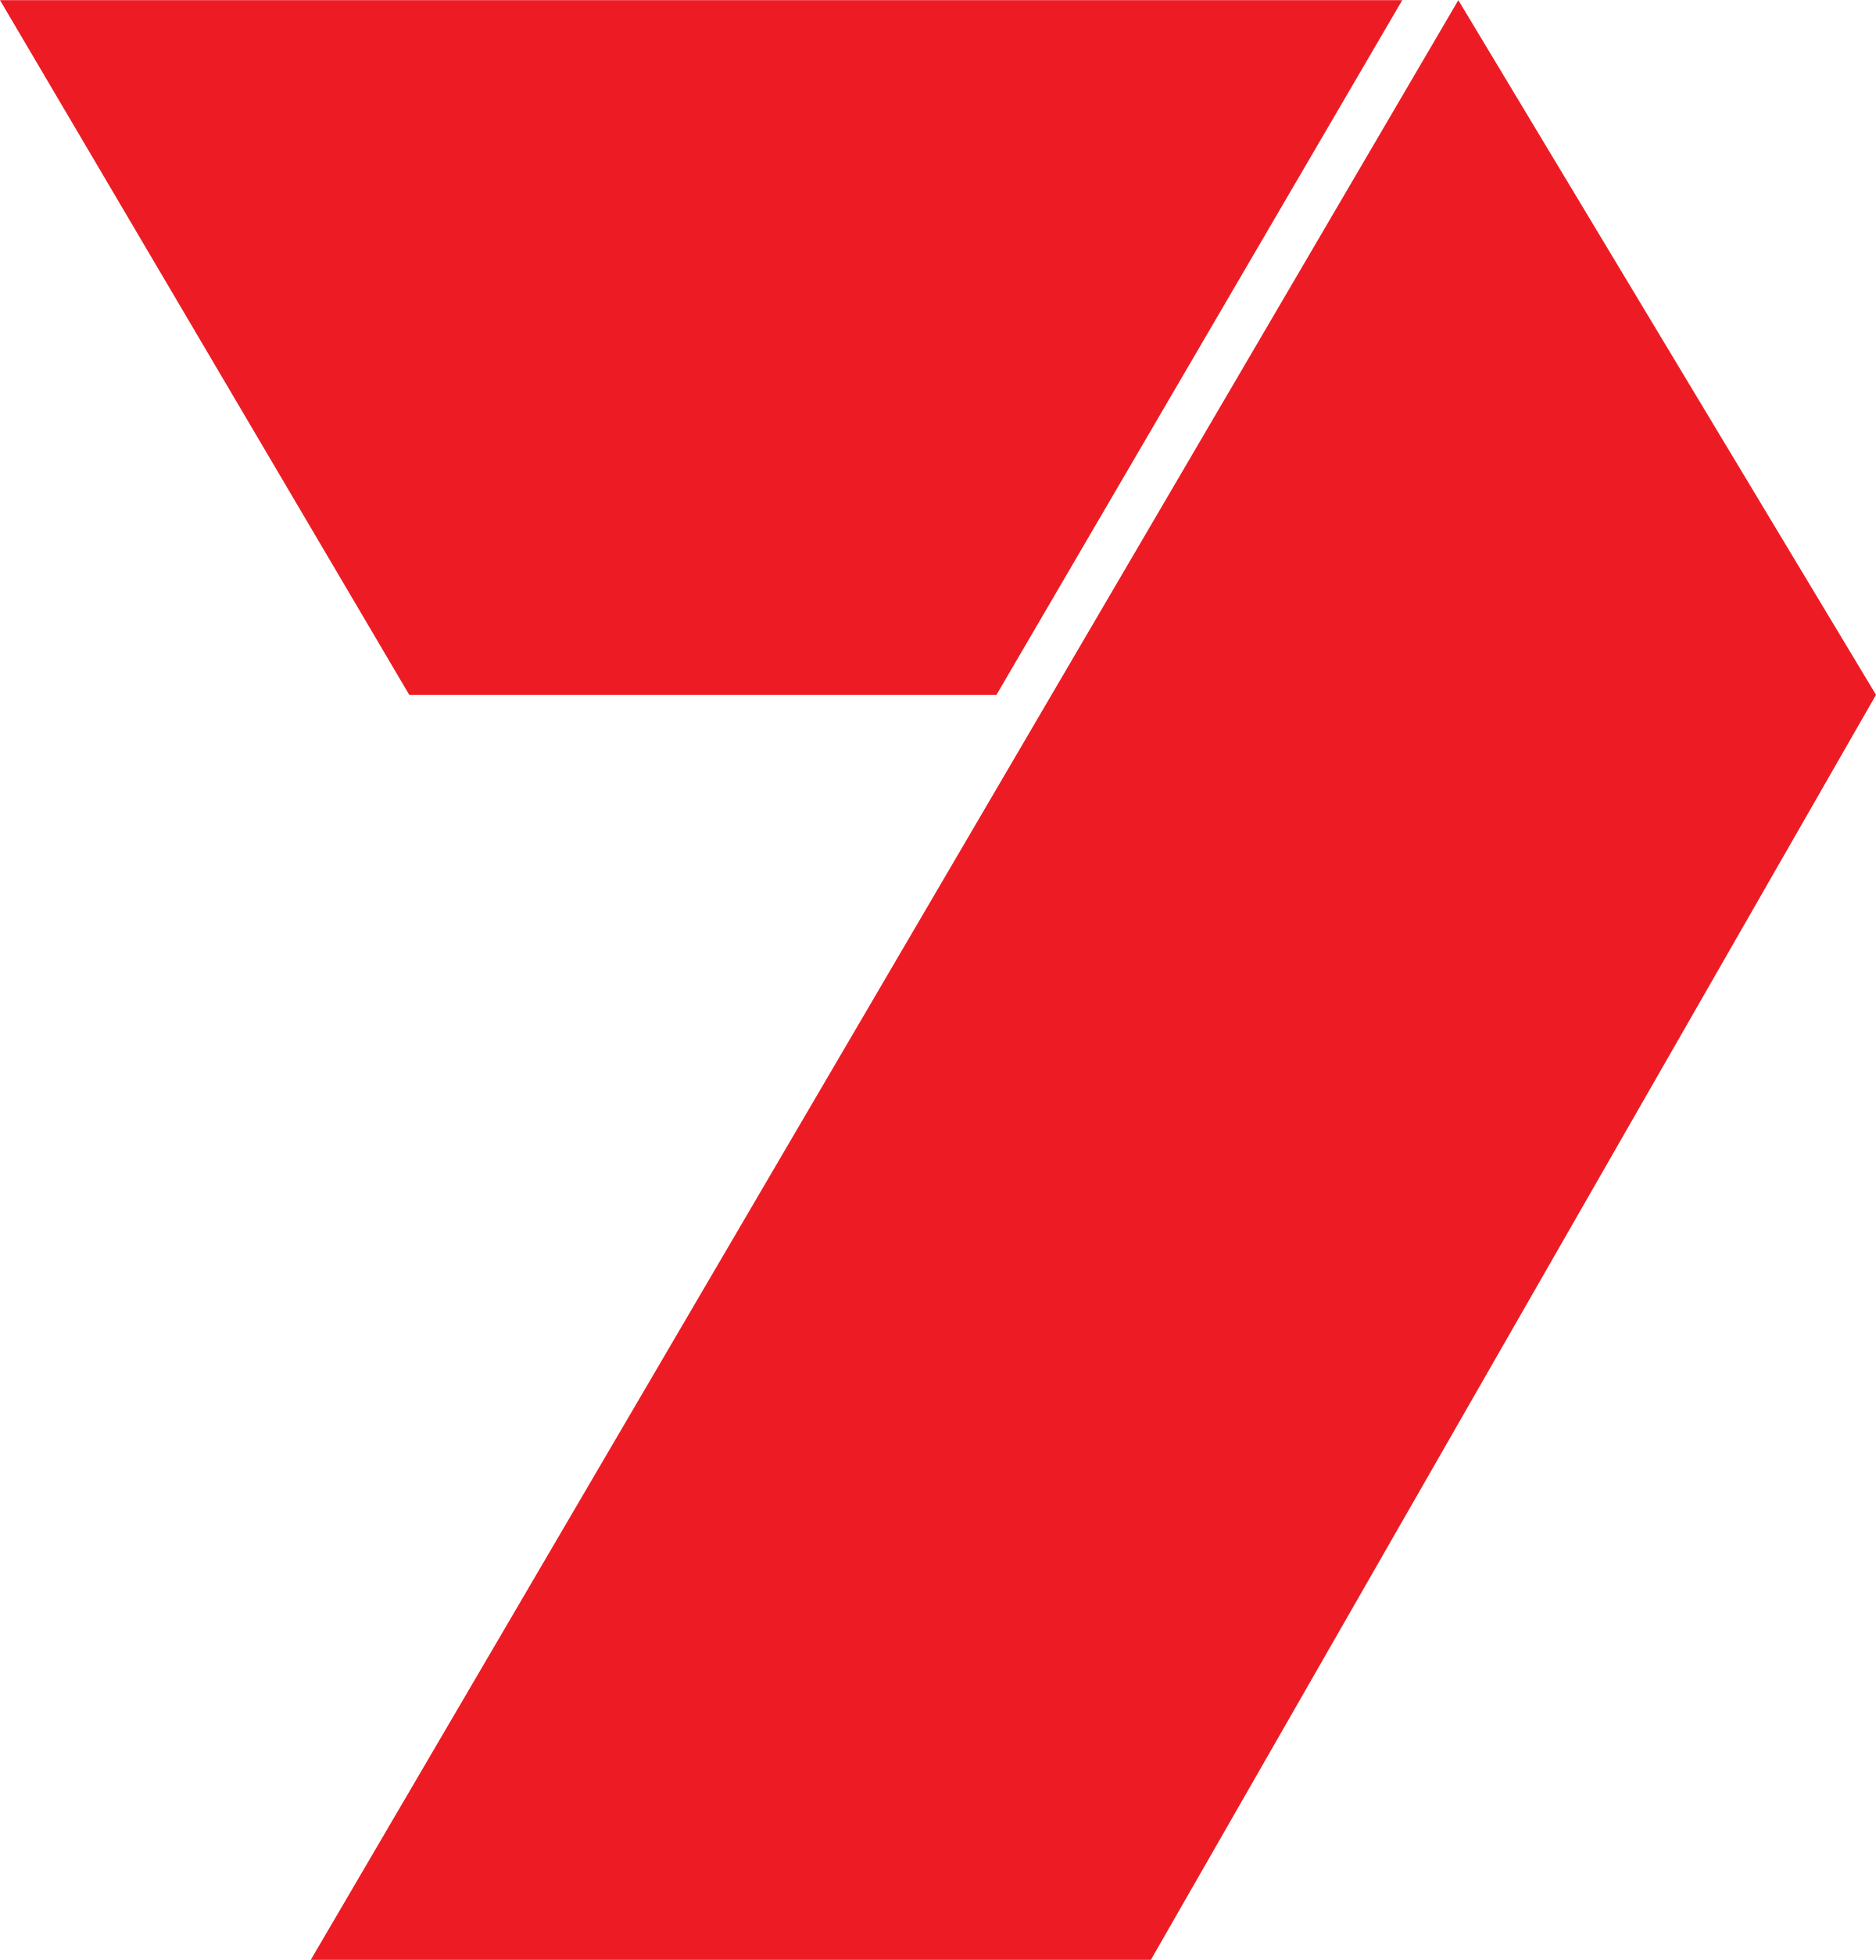 Seven Logo - Seven Logo PNG Transparent & SVG Vector - Freebie Supply